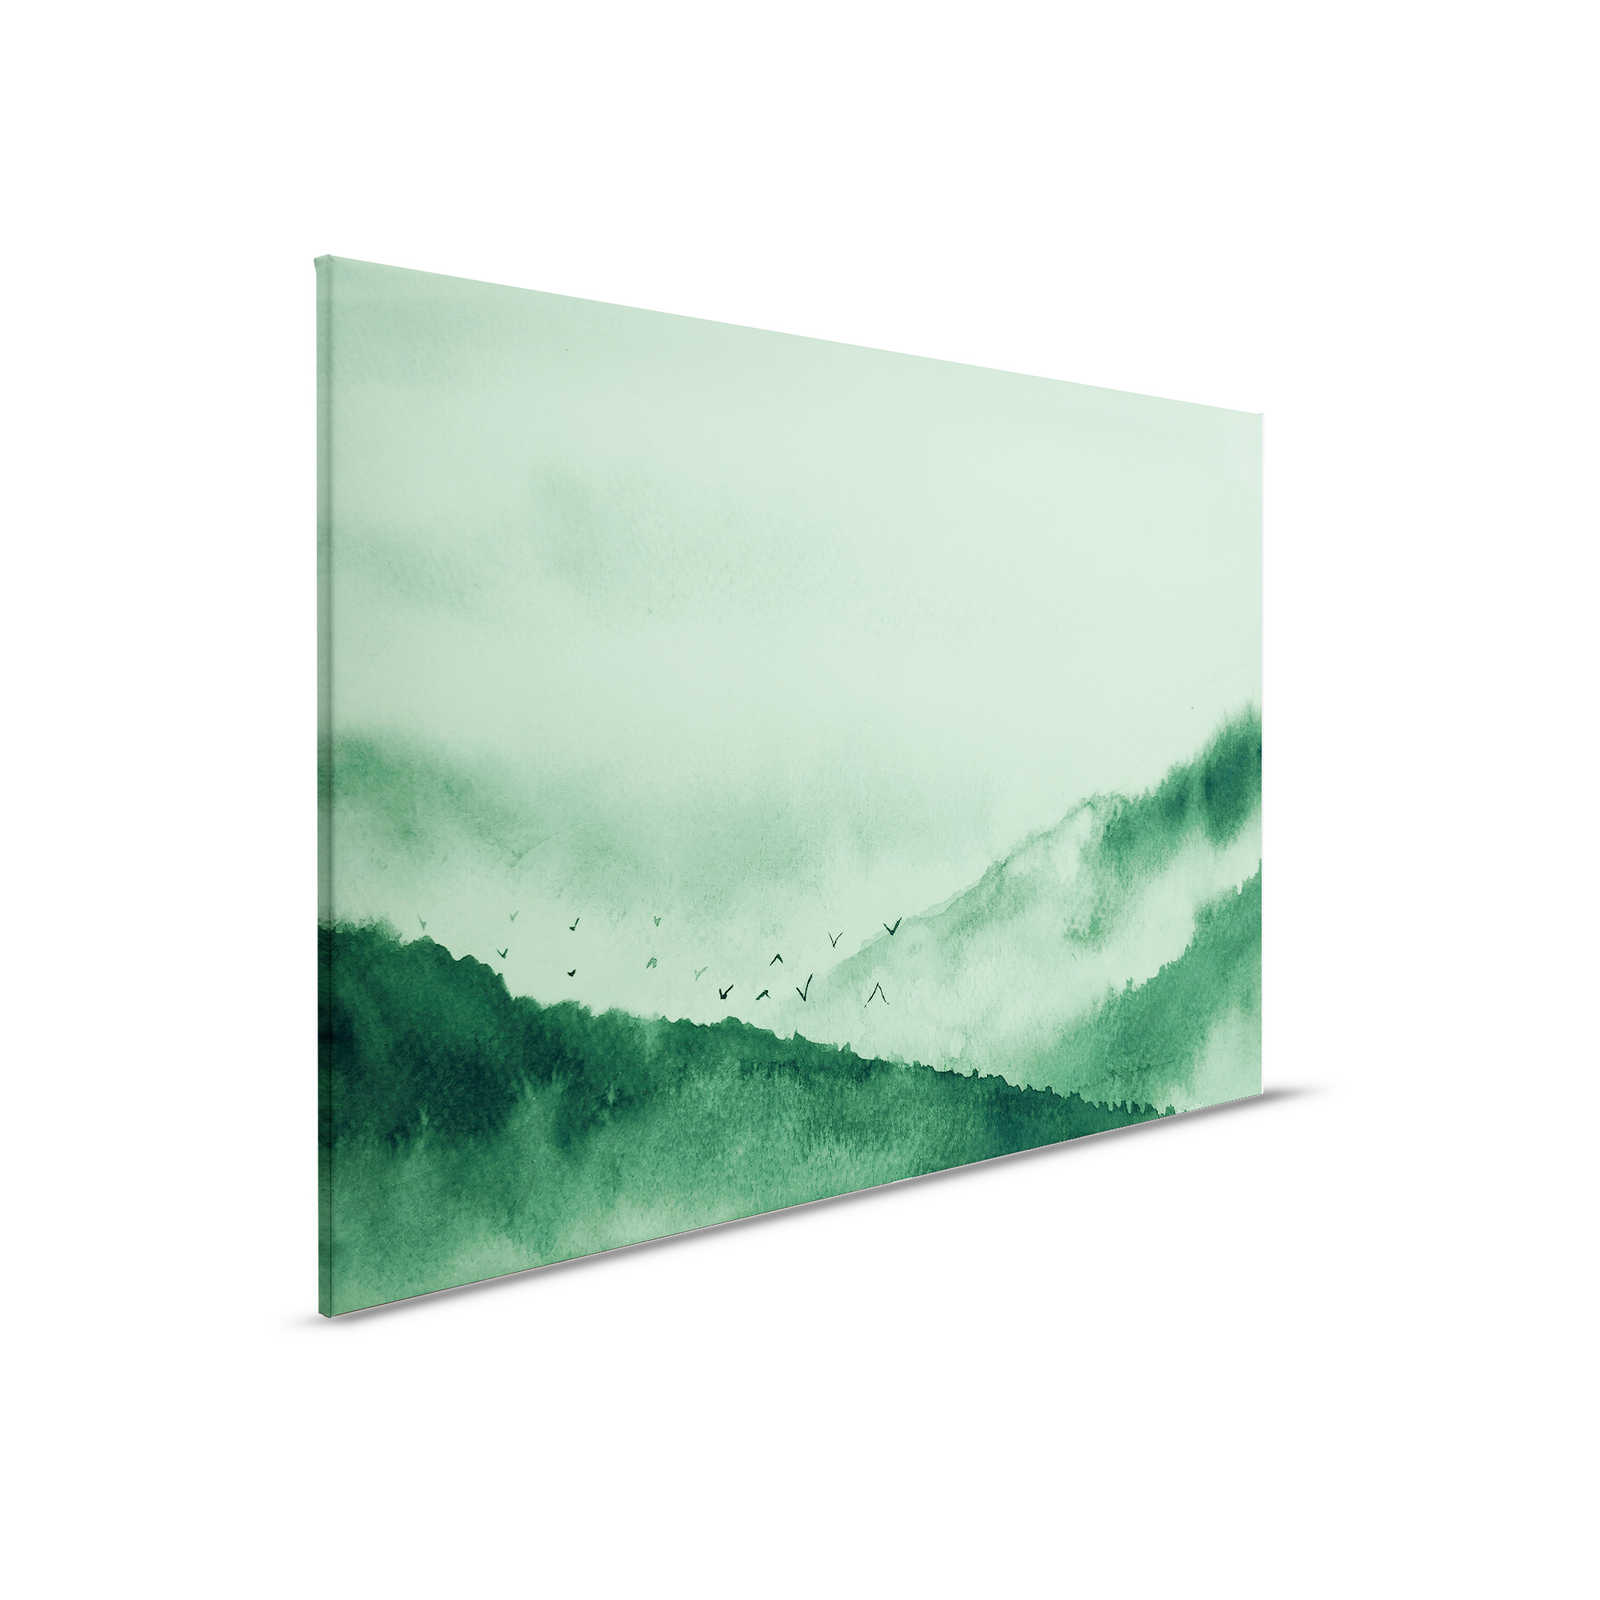         Leinwand mit nebeliger Landschaft im Gemälde-Stil | grün, schwarz – 0,90 m x 0,60 m
    